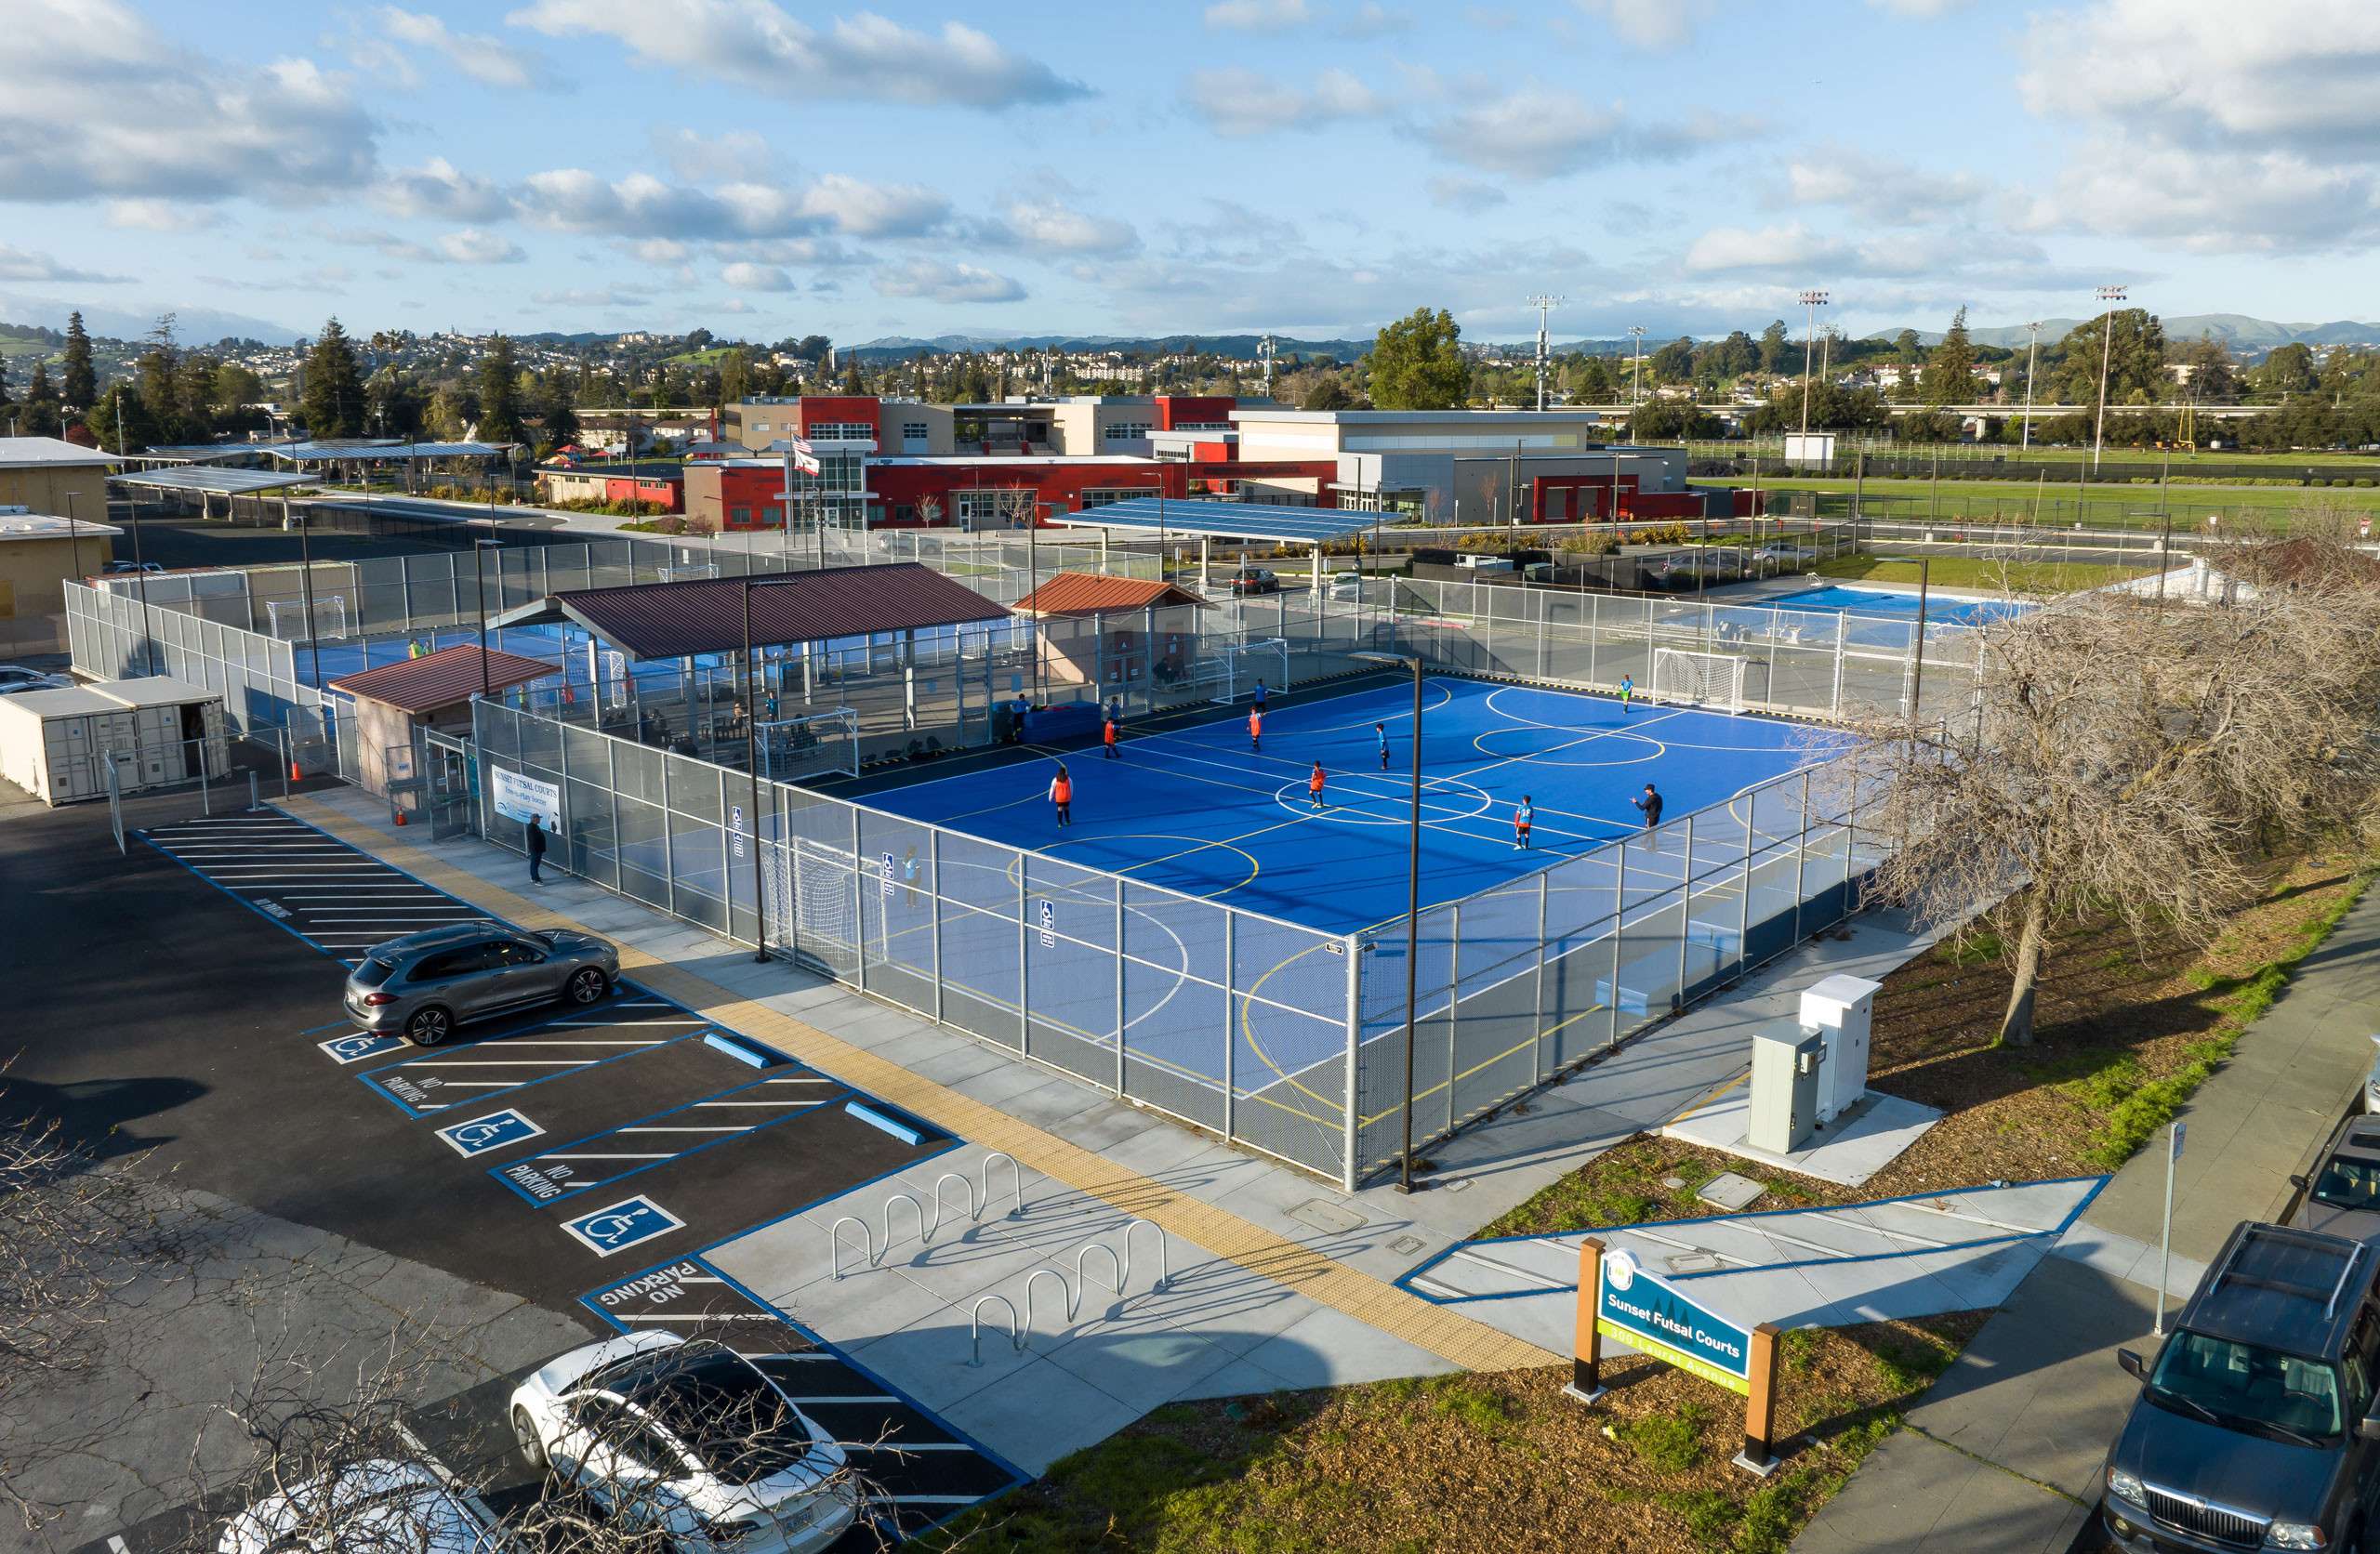 Sunset Futsal Courts